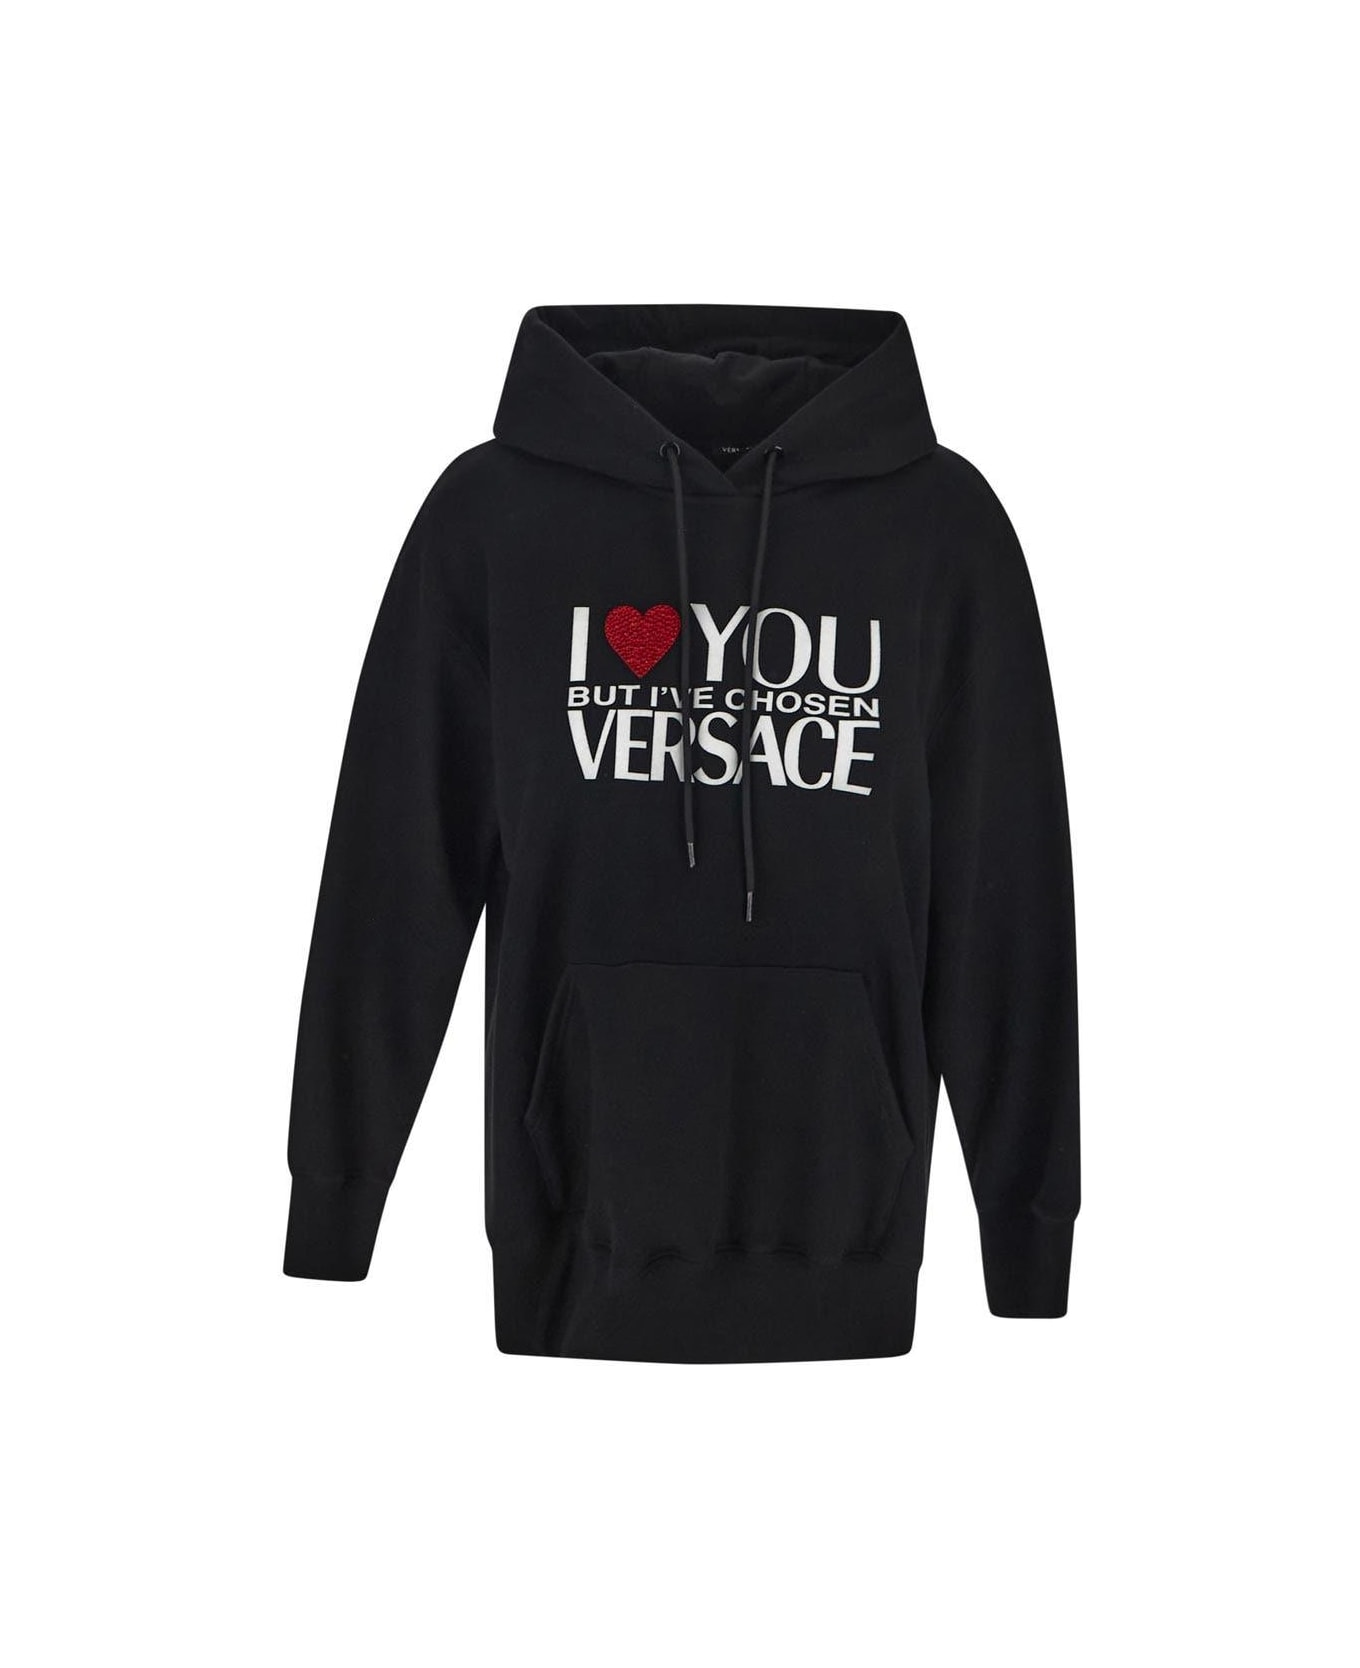 Versace 'i Love You' Black Hoodie - Black